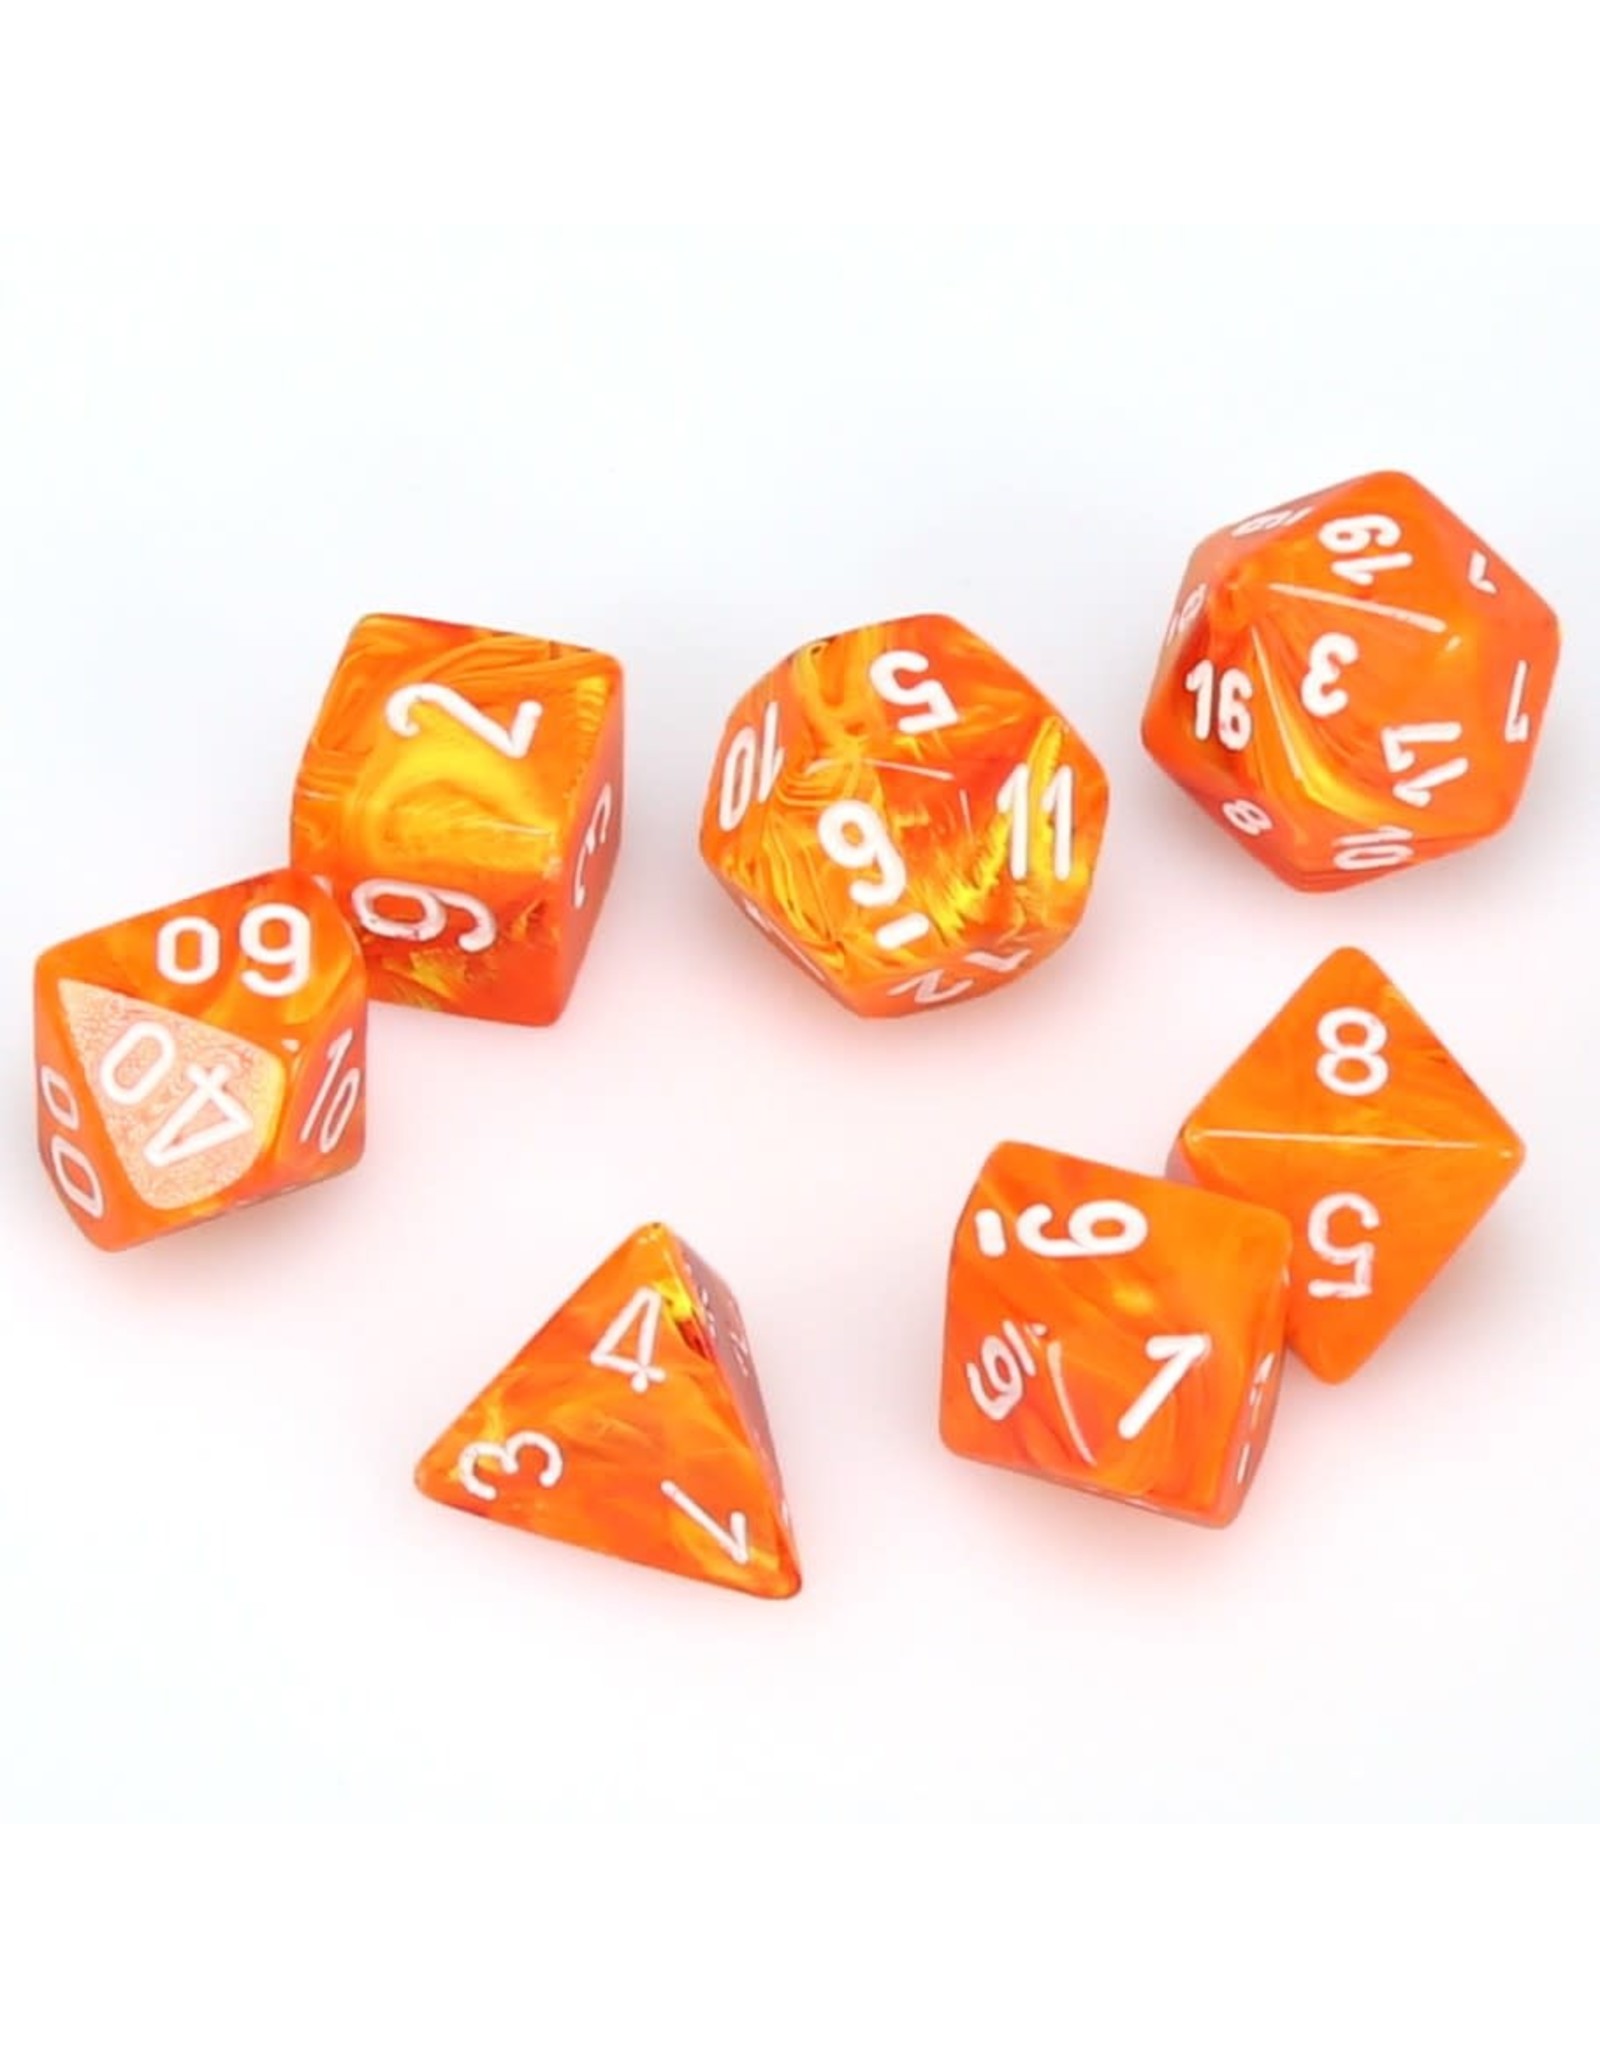 New Chessex Polyhedral Dice with Bag Orange Vortex 7 Piece Set DnD RPG 